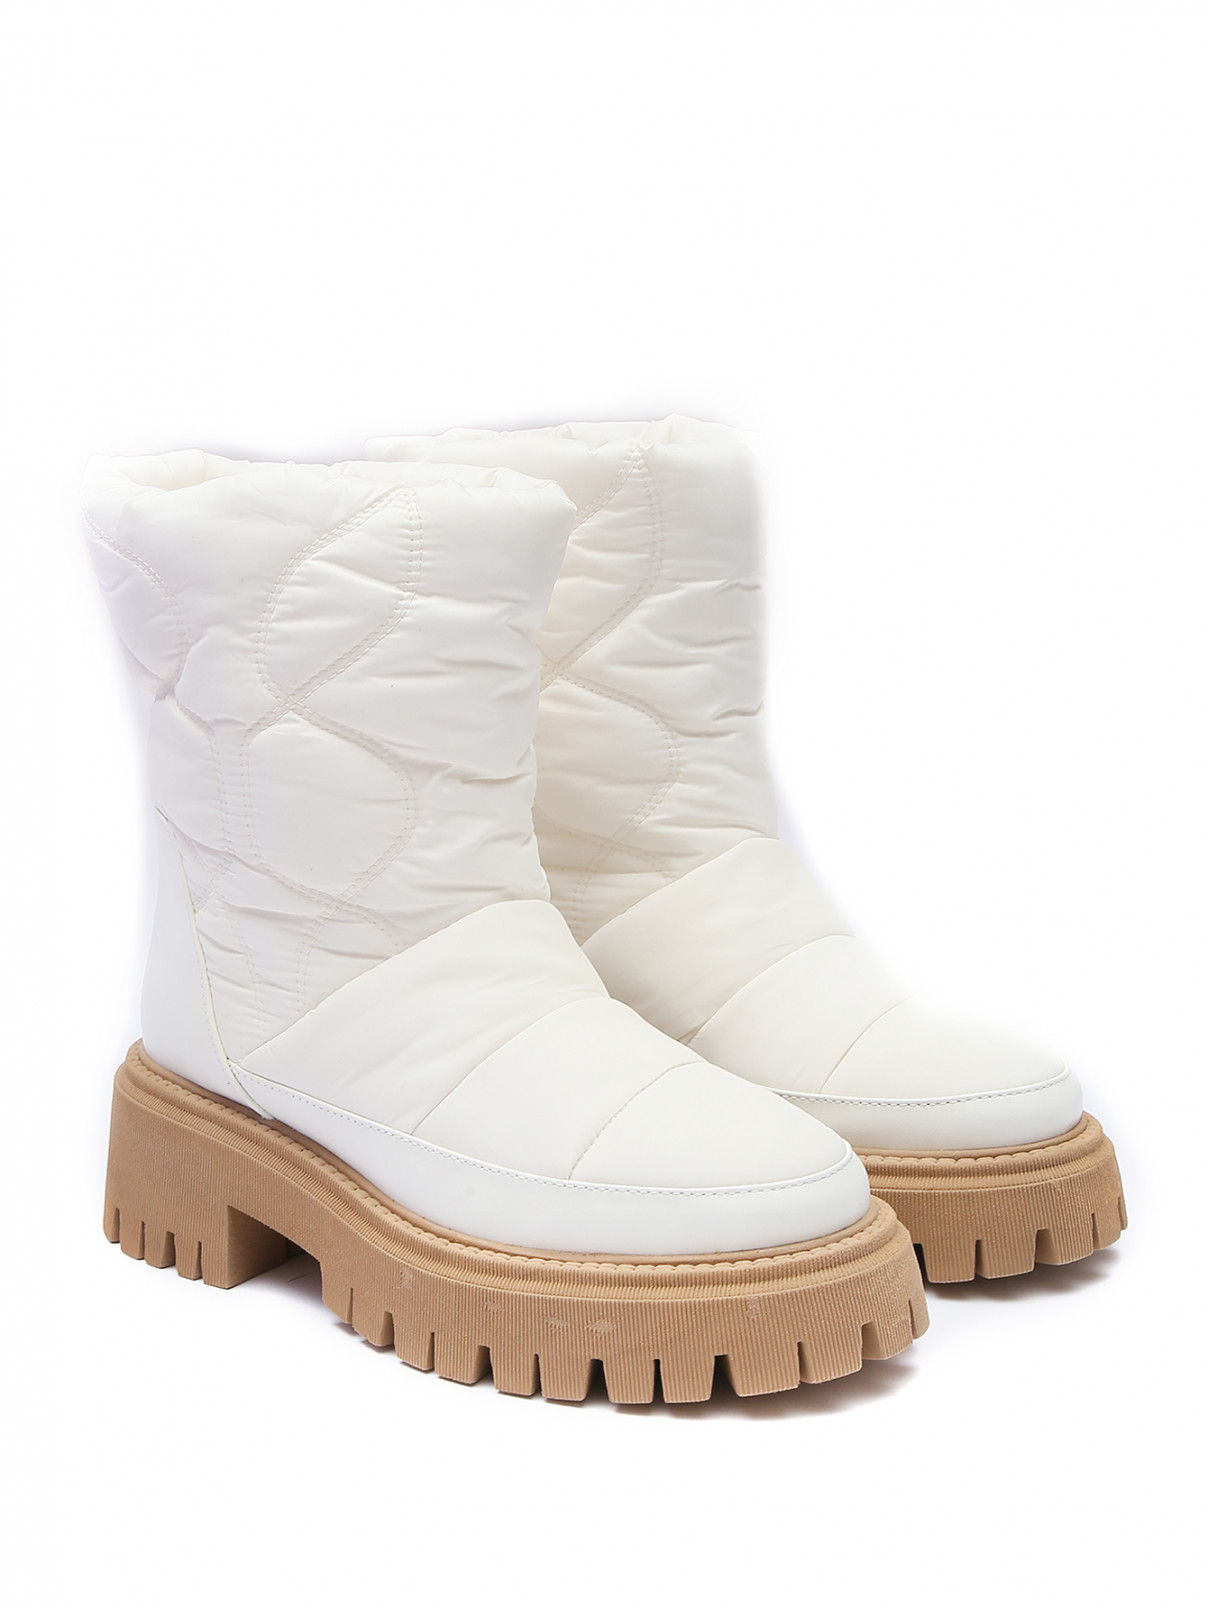 Комбинированные ботинки из текстиля и кожи Dorothee Schumacher  –  Общий вид  – Цвет:  Белый